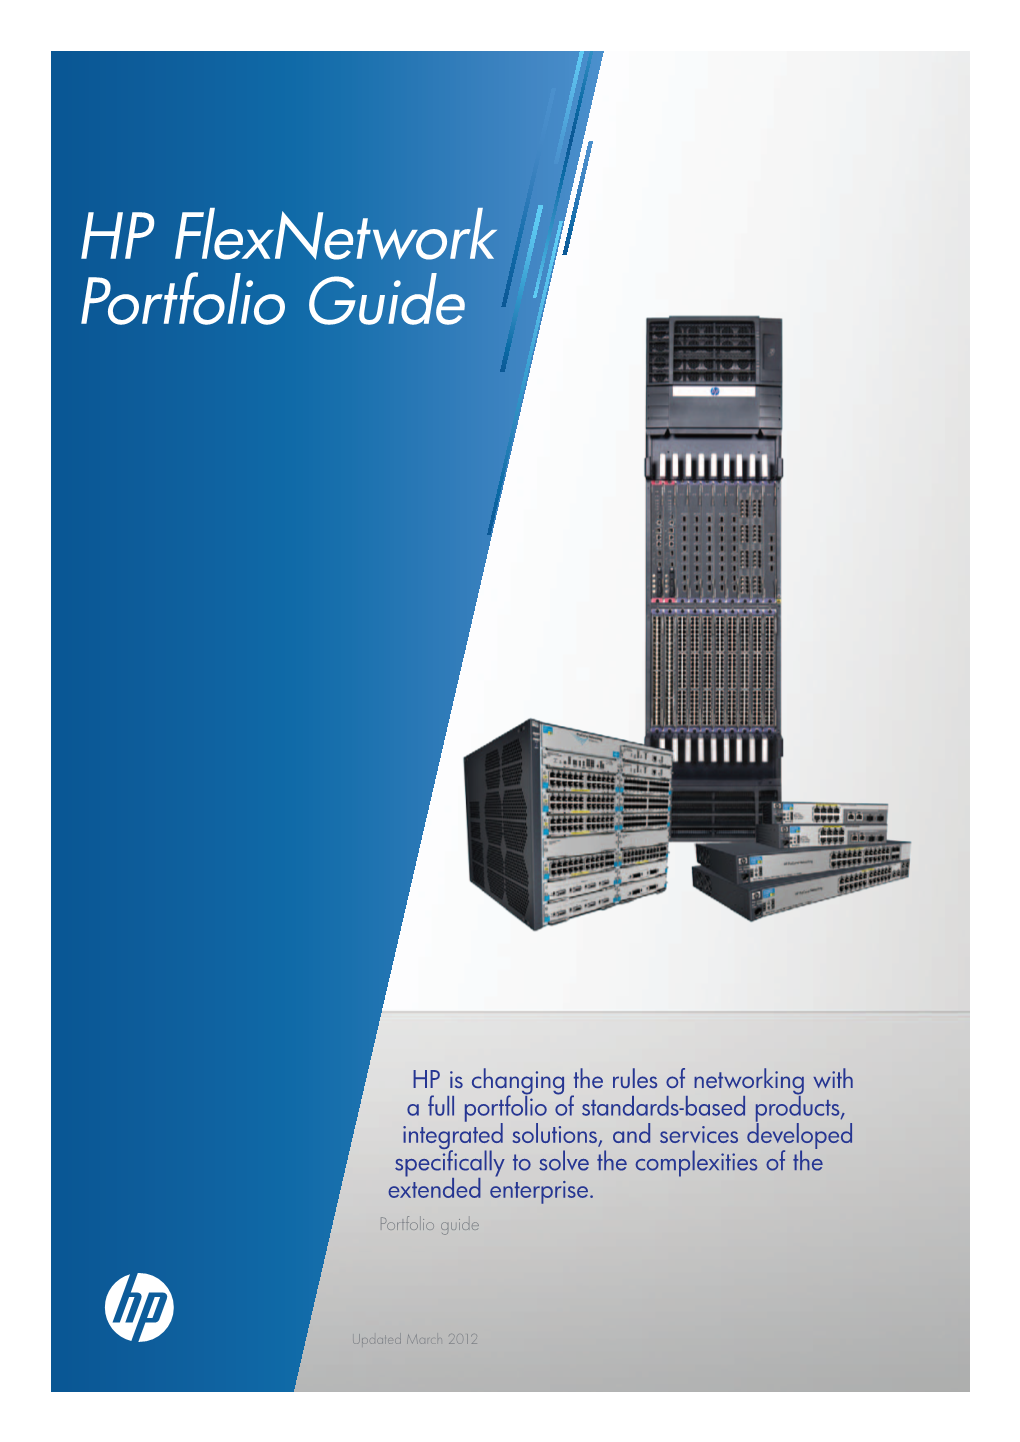 HP Flexnetwork Portfolio Guide